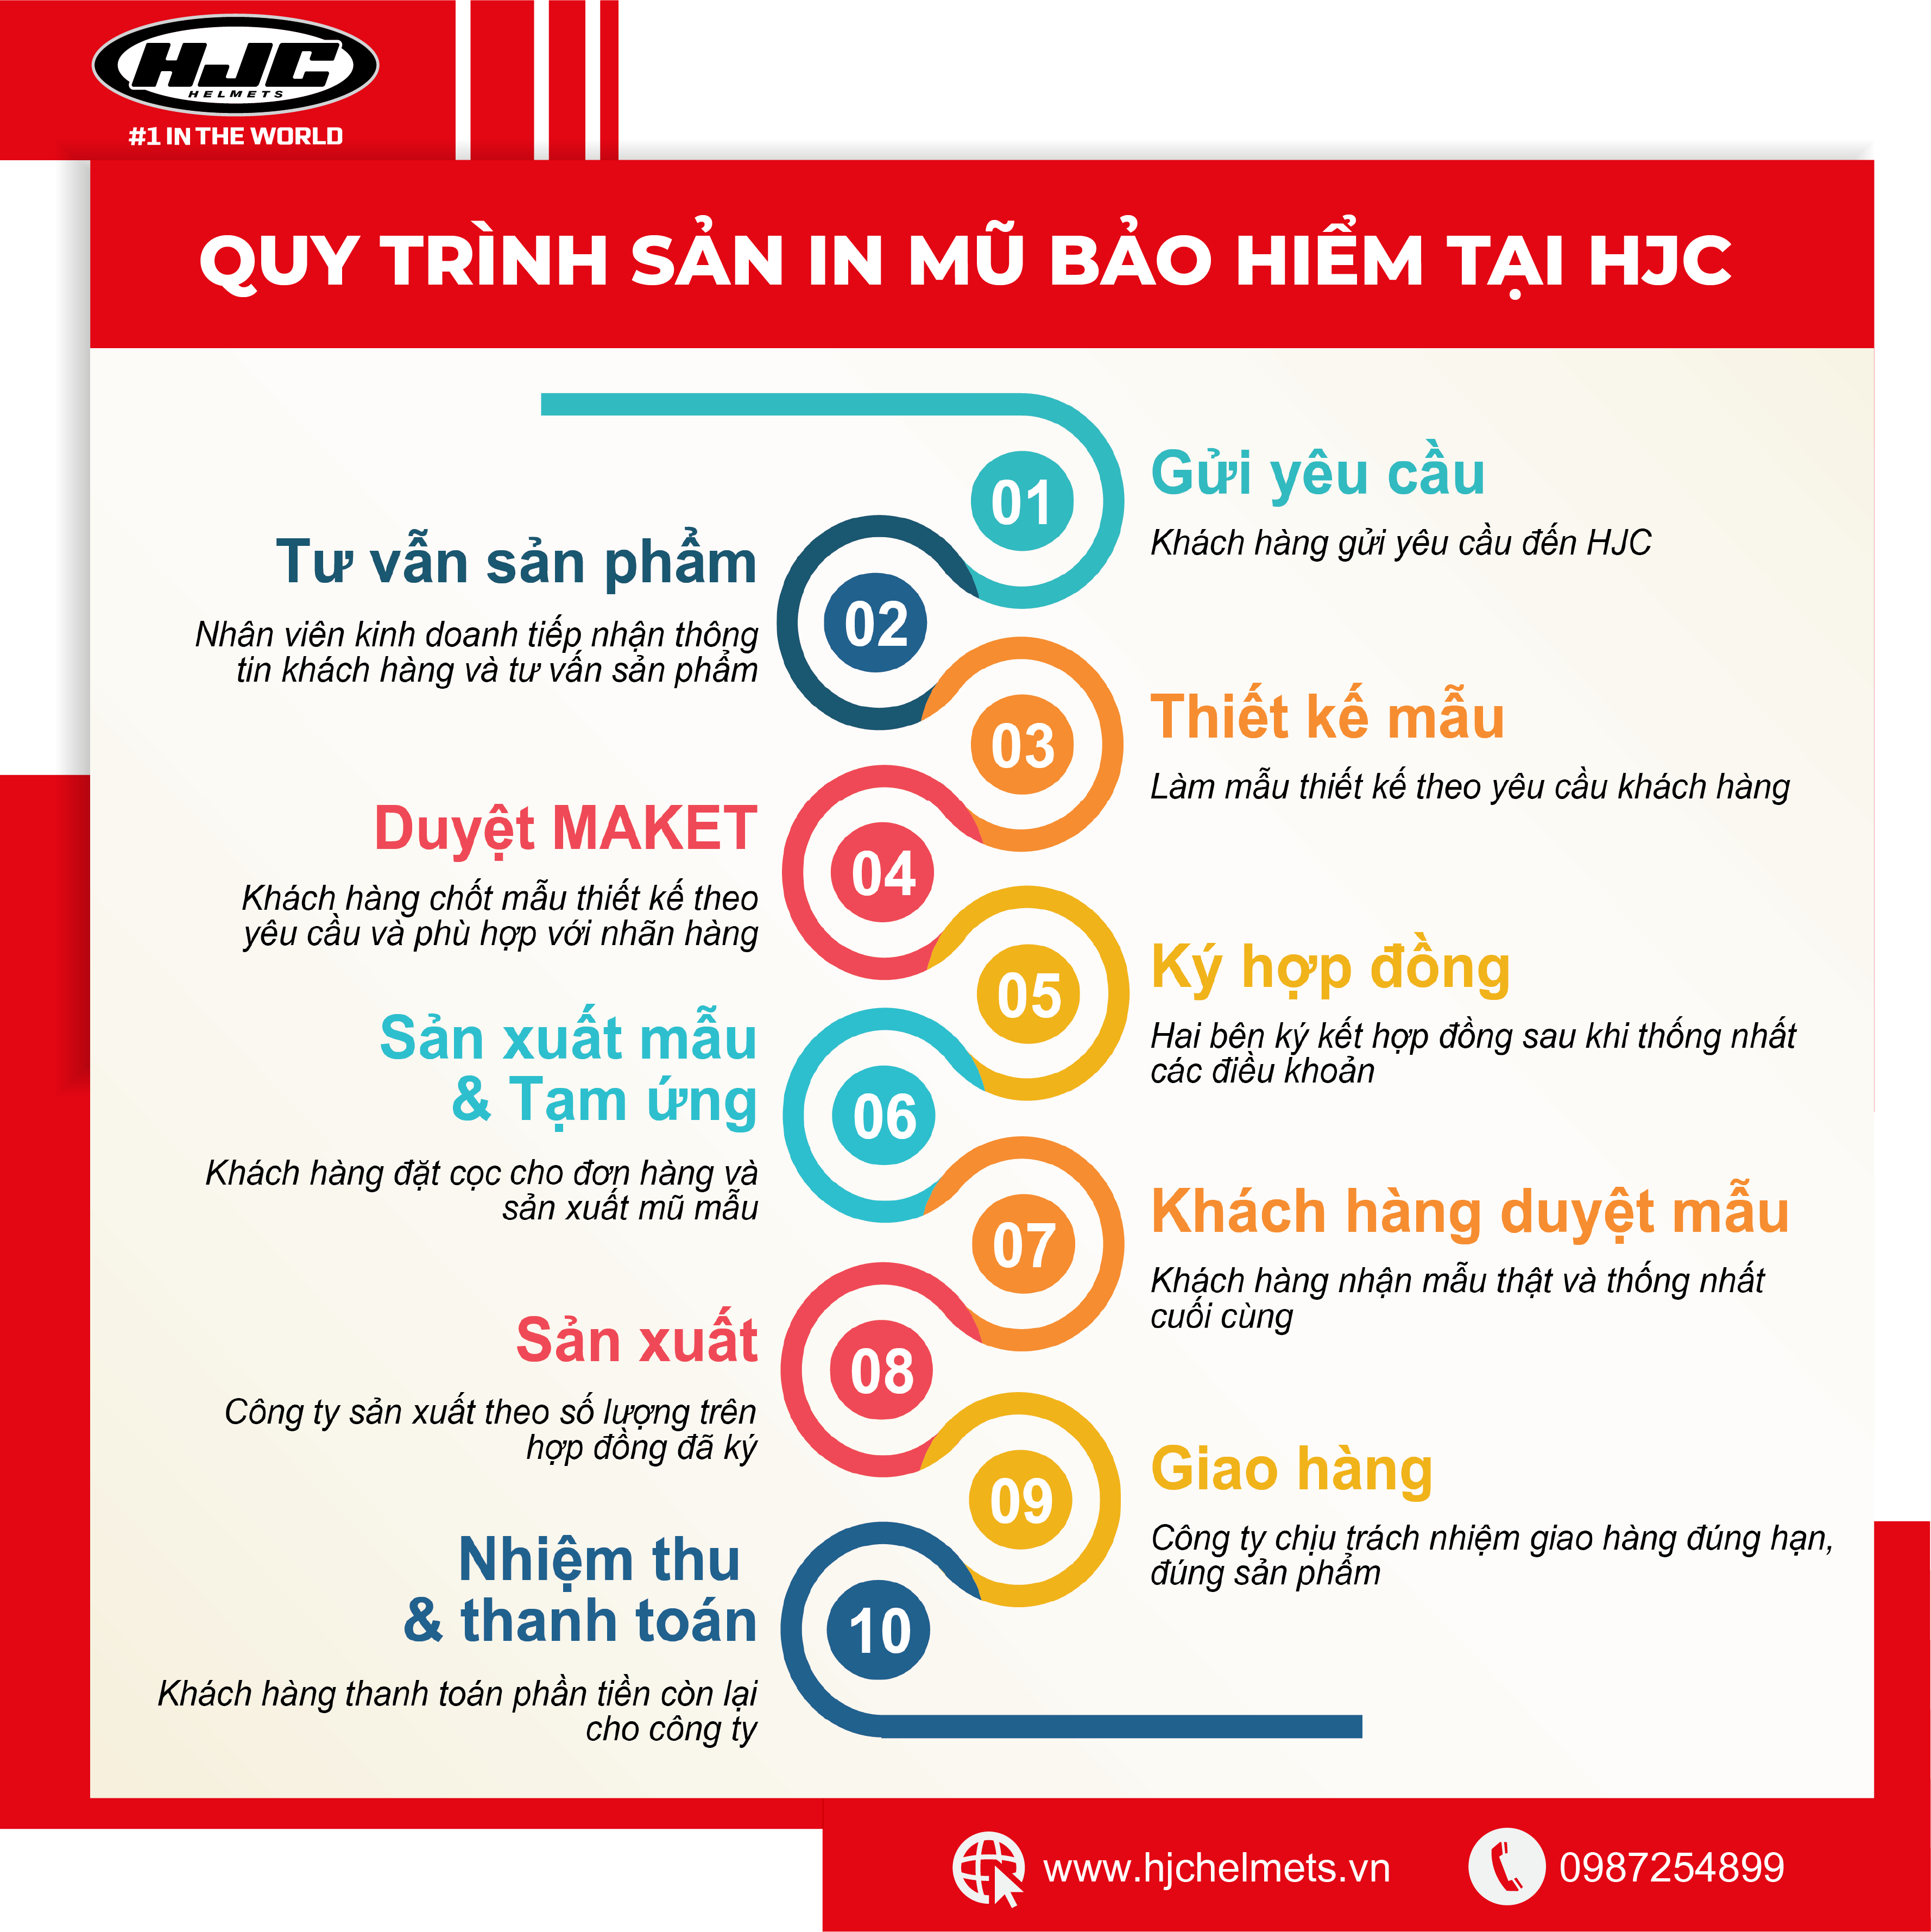 Quy trình in mũ bảo hiểm Hà Nội của HJC